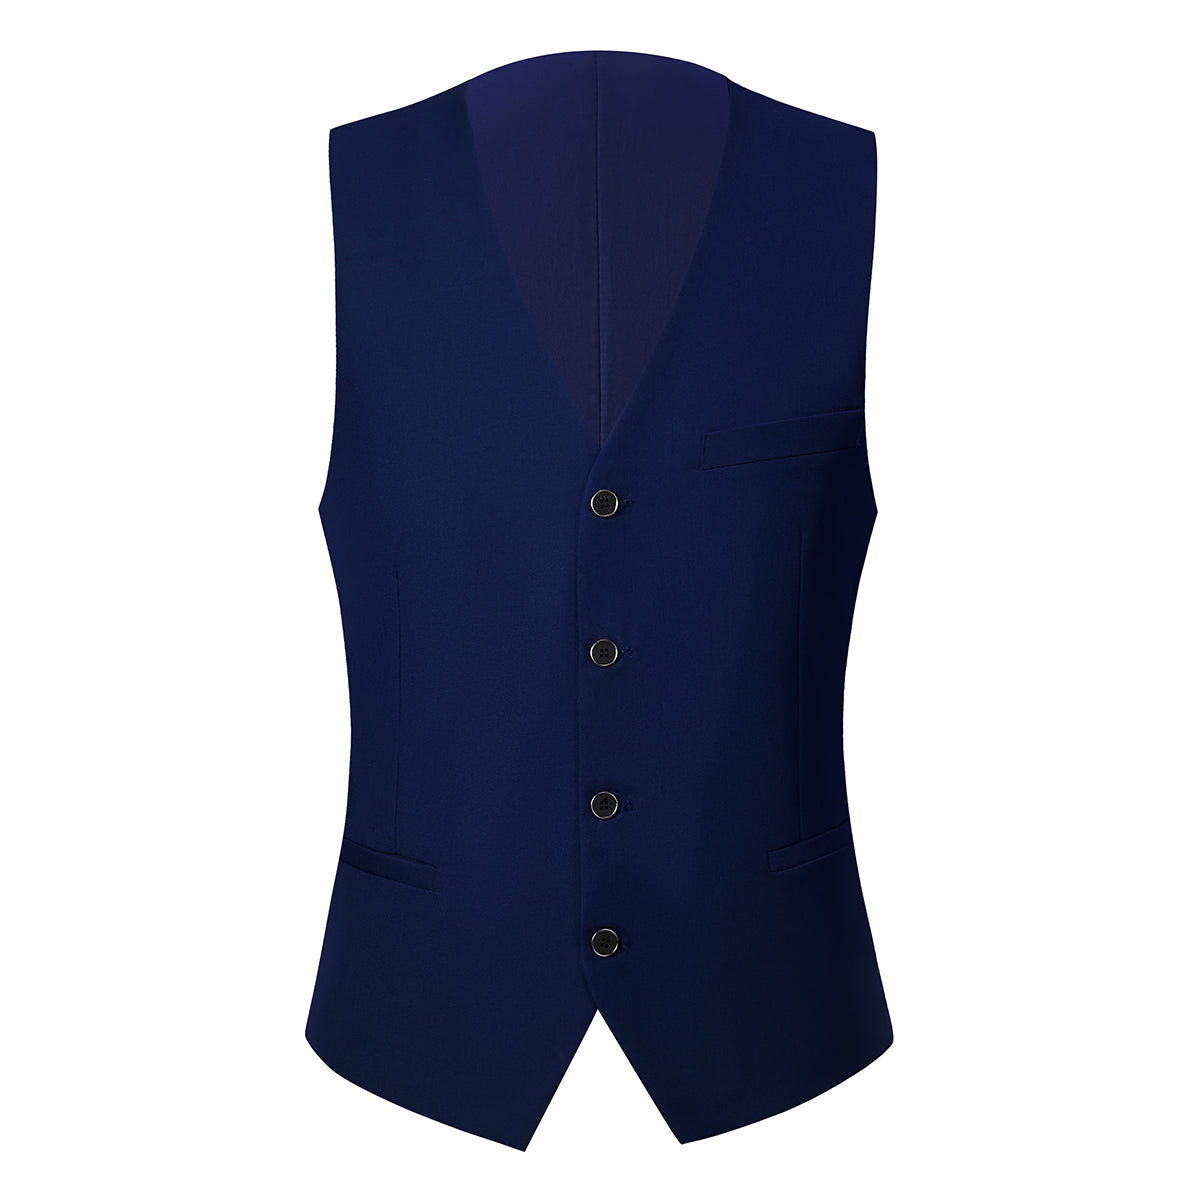 3-Piece One Button Suit Slim Fit Blue Suit